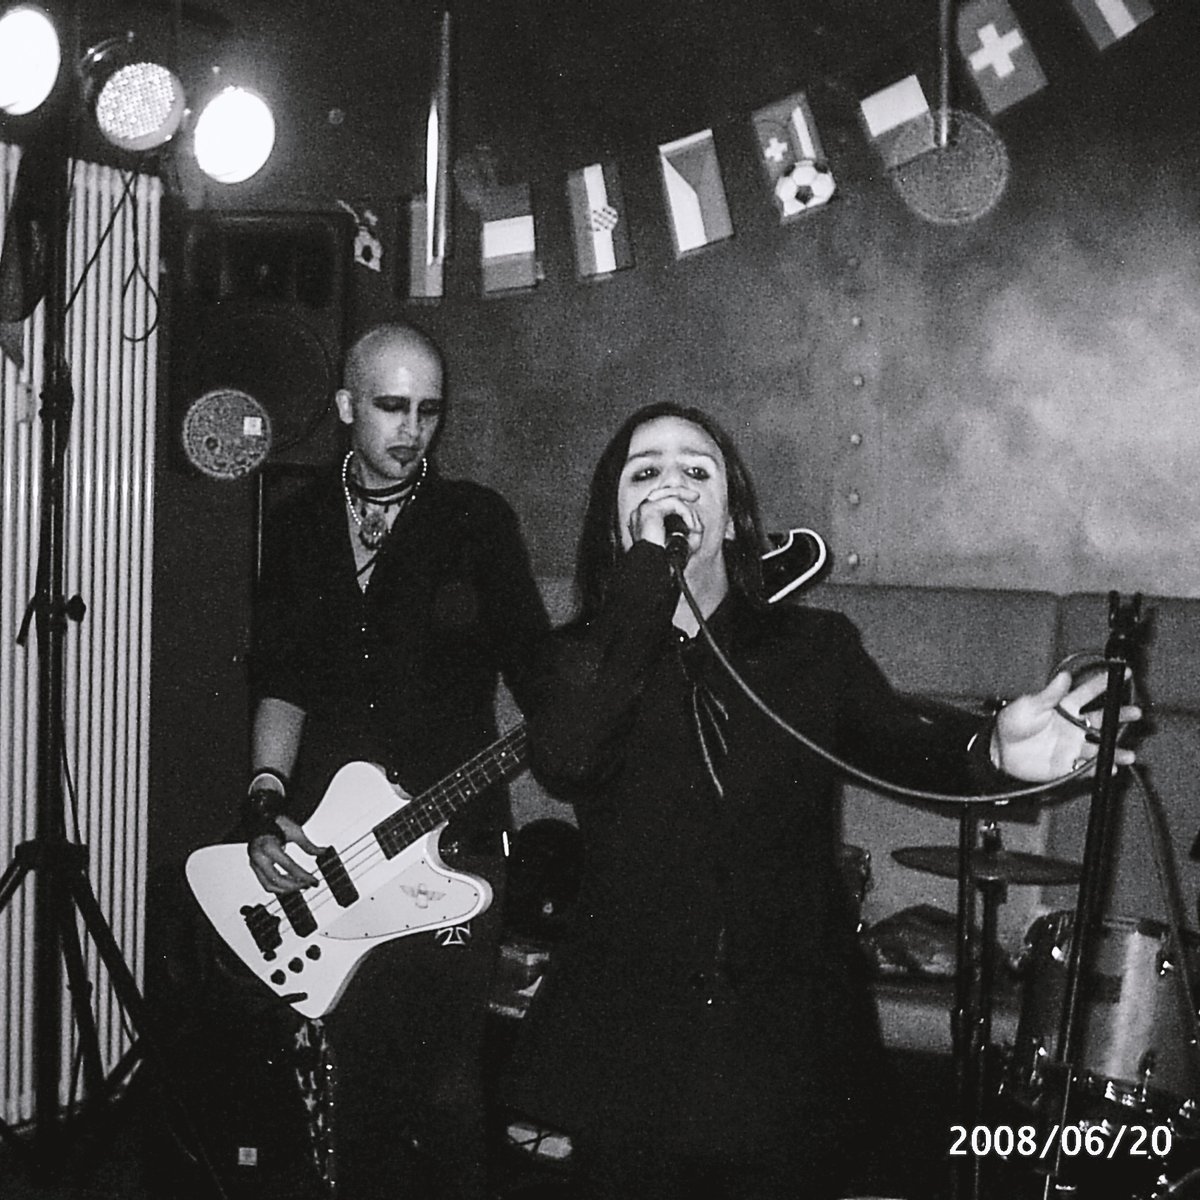 HACE 14 AÑOS: Classic Bobu de mini-gira por Alemania con CASUAL, mi banda de goth rock del momento. En 2008 ya era calvo y poser y te daba la chapa a diario, como ahora, pero por Myspace. Tenía un poco más de colágeno en la cara y en el culo pero básicamente ya era un cuadro!